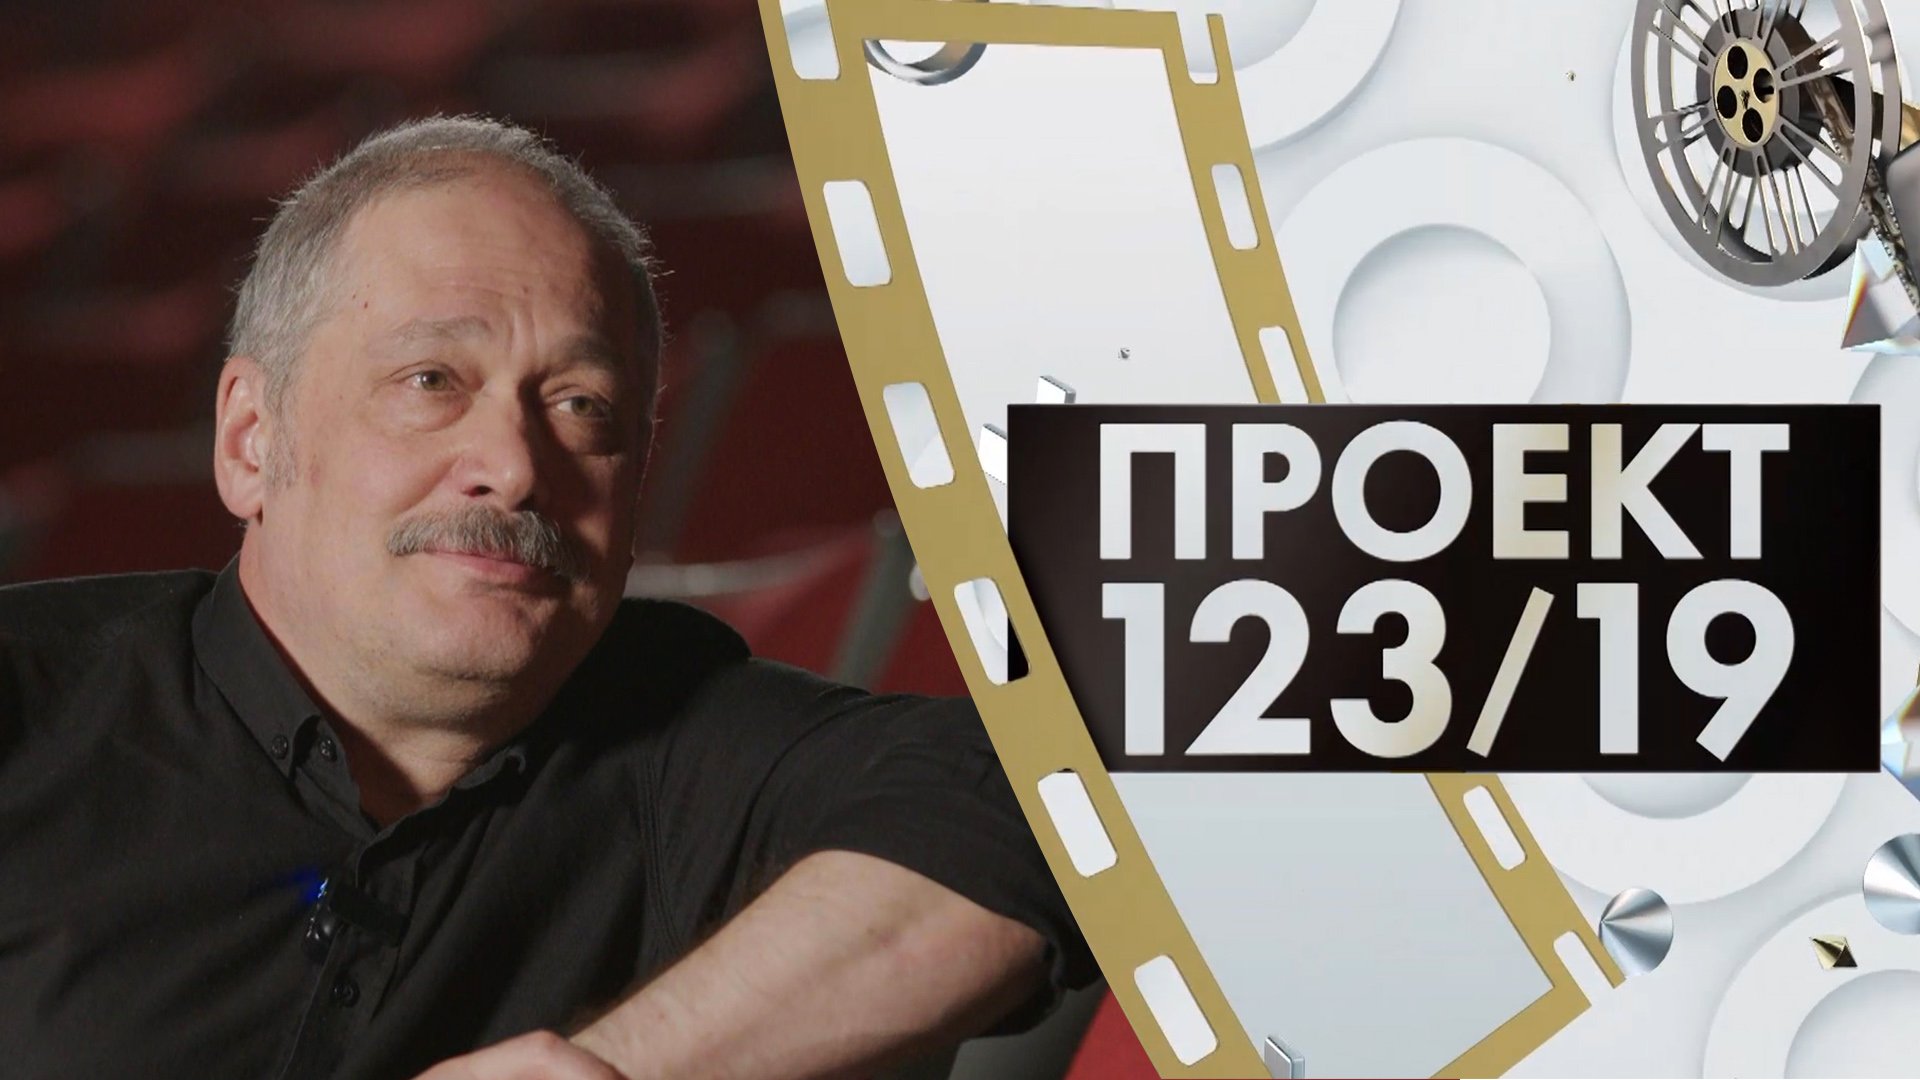 Вадим Цаликов | Проект 123/19 (2023)